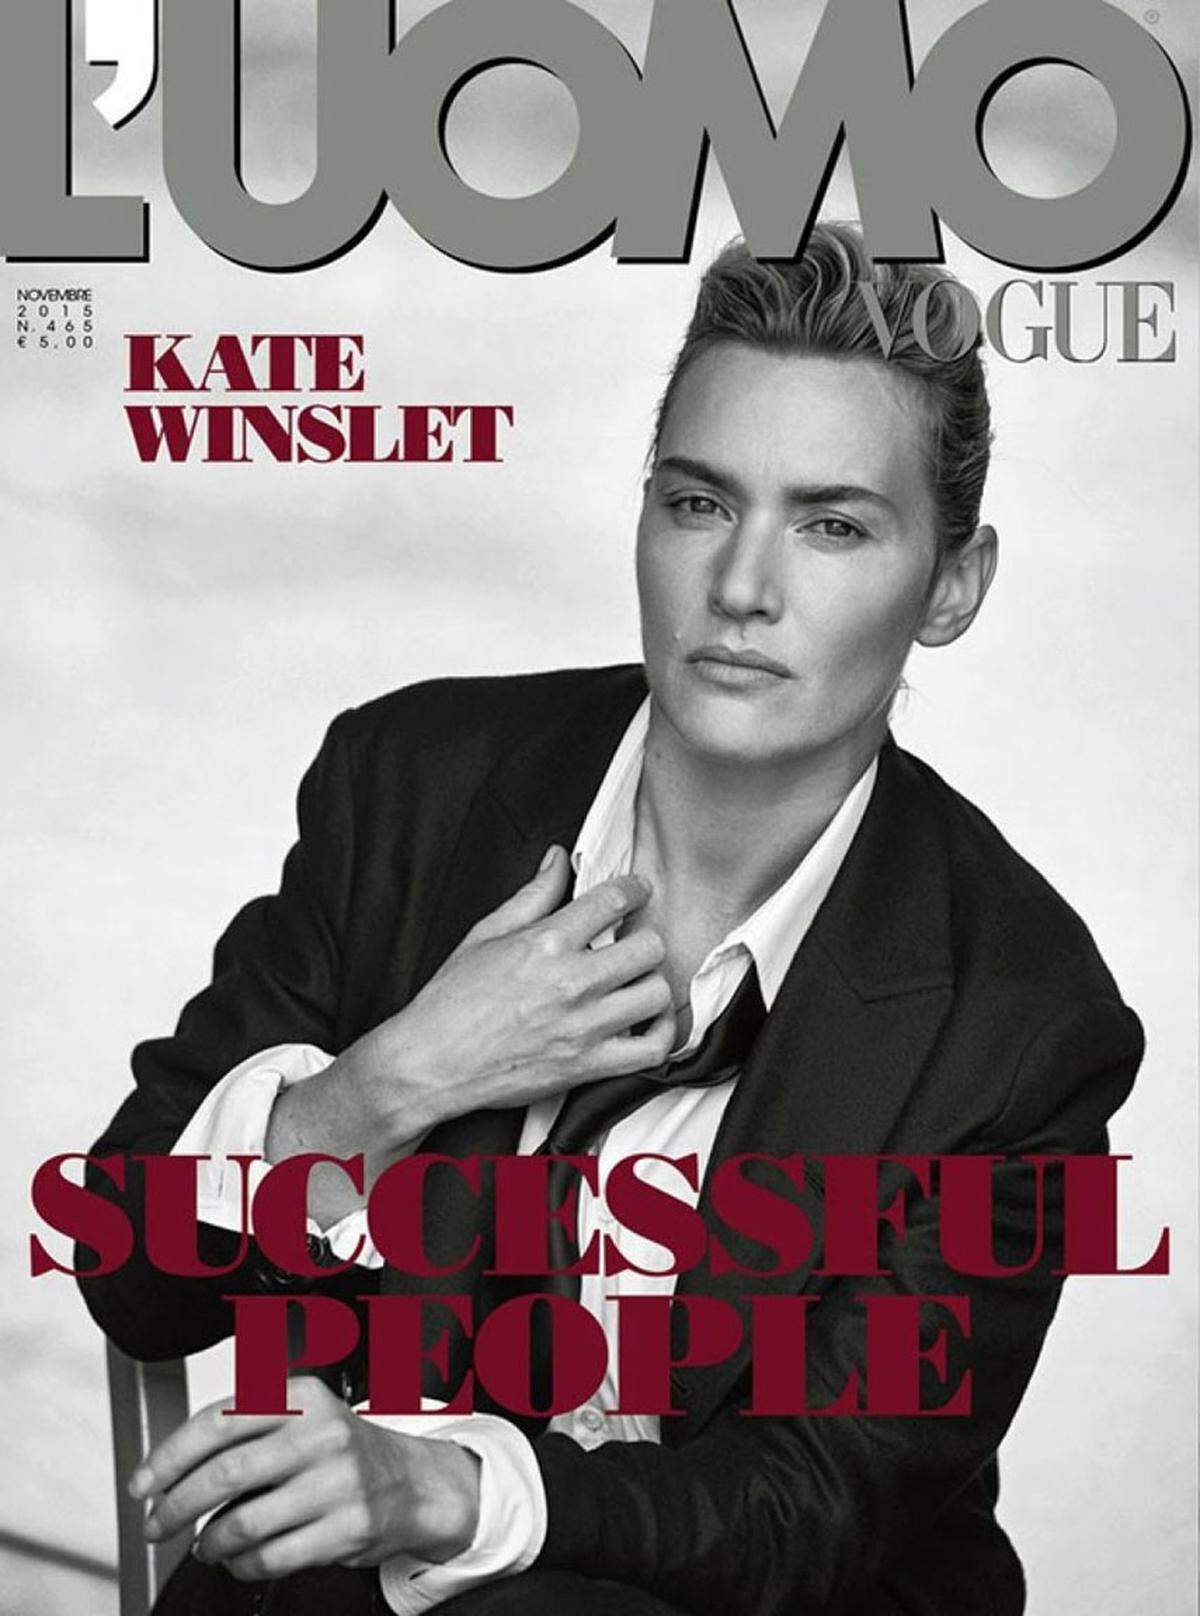 Eine Frau am Cover der italienischen Herren-Modebibel "Vogue L‘Uomo", das kommt nicht oft vor. Kate Winslet bezeugt mit diesem Porträt ihre Wandlungsfähigkeit. In Szene gesetzt hat sie der Fotograf Peter Lindbergh. Androgyn ist momentan nämlich in.